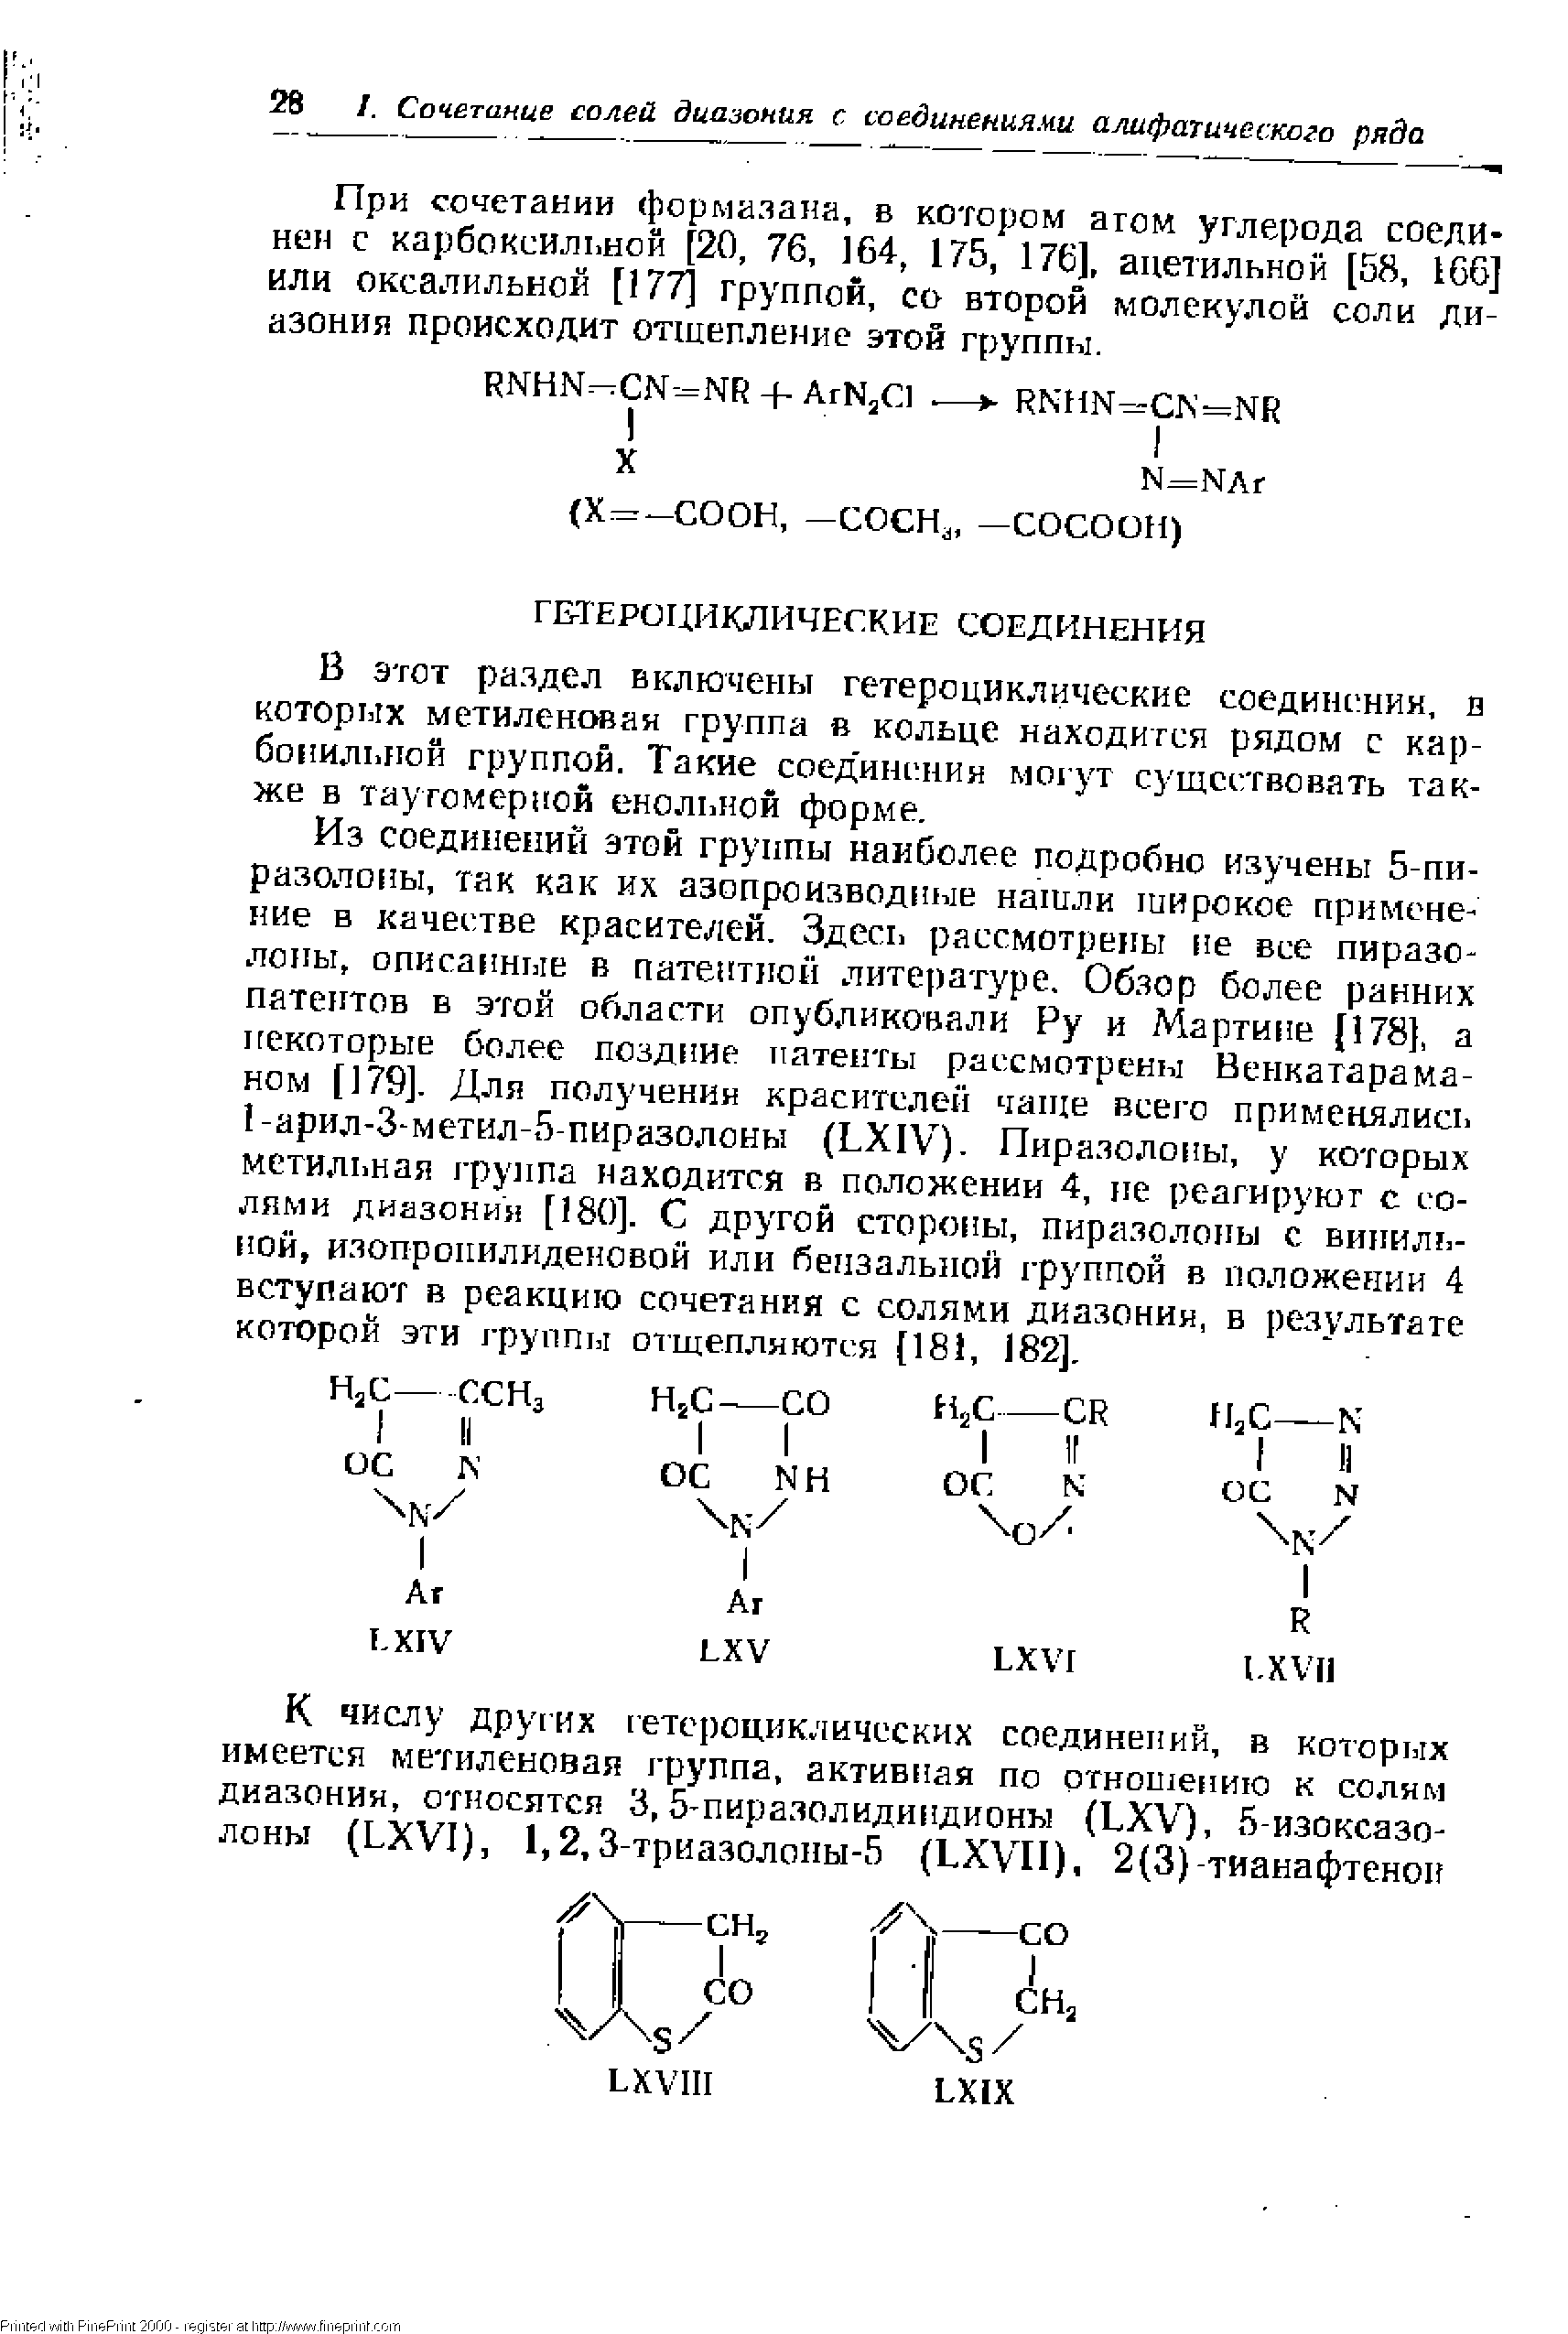 При сочетании формазана, в котором атом углерода соединен с карбоксил1.ной [20, 76, 164, 175, 176], ацетильной [58, 166] или оксалильной [177] группой, со второй молекулой соли диазония происходит отщепление этой группы.